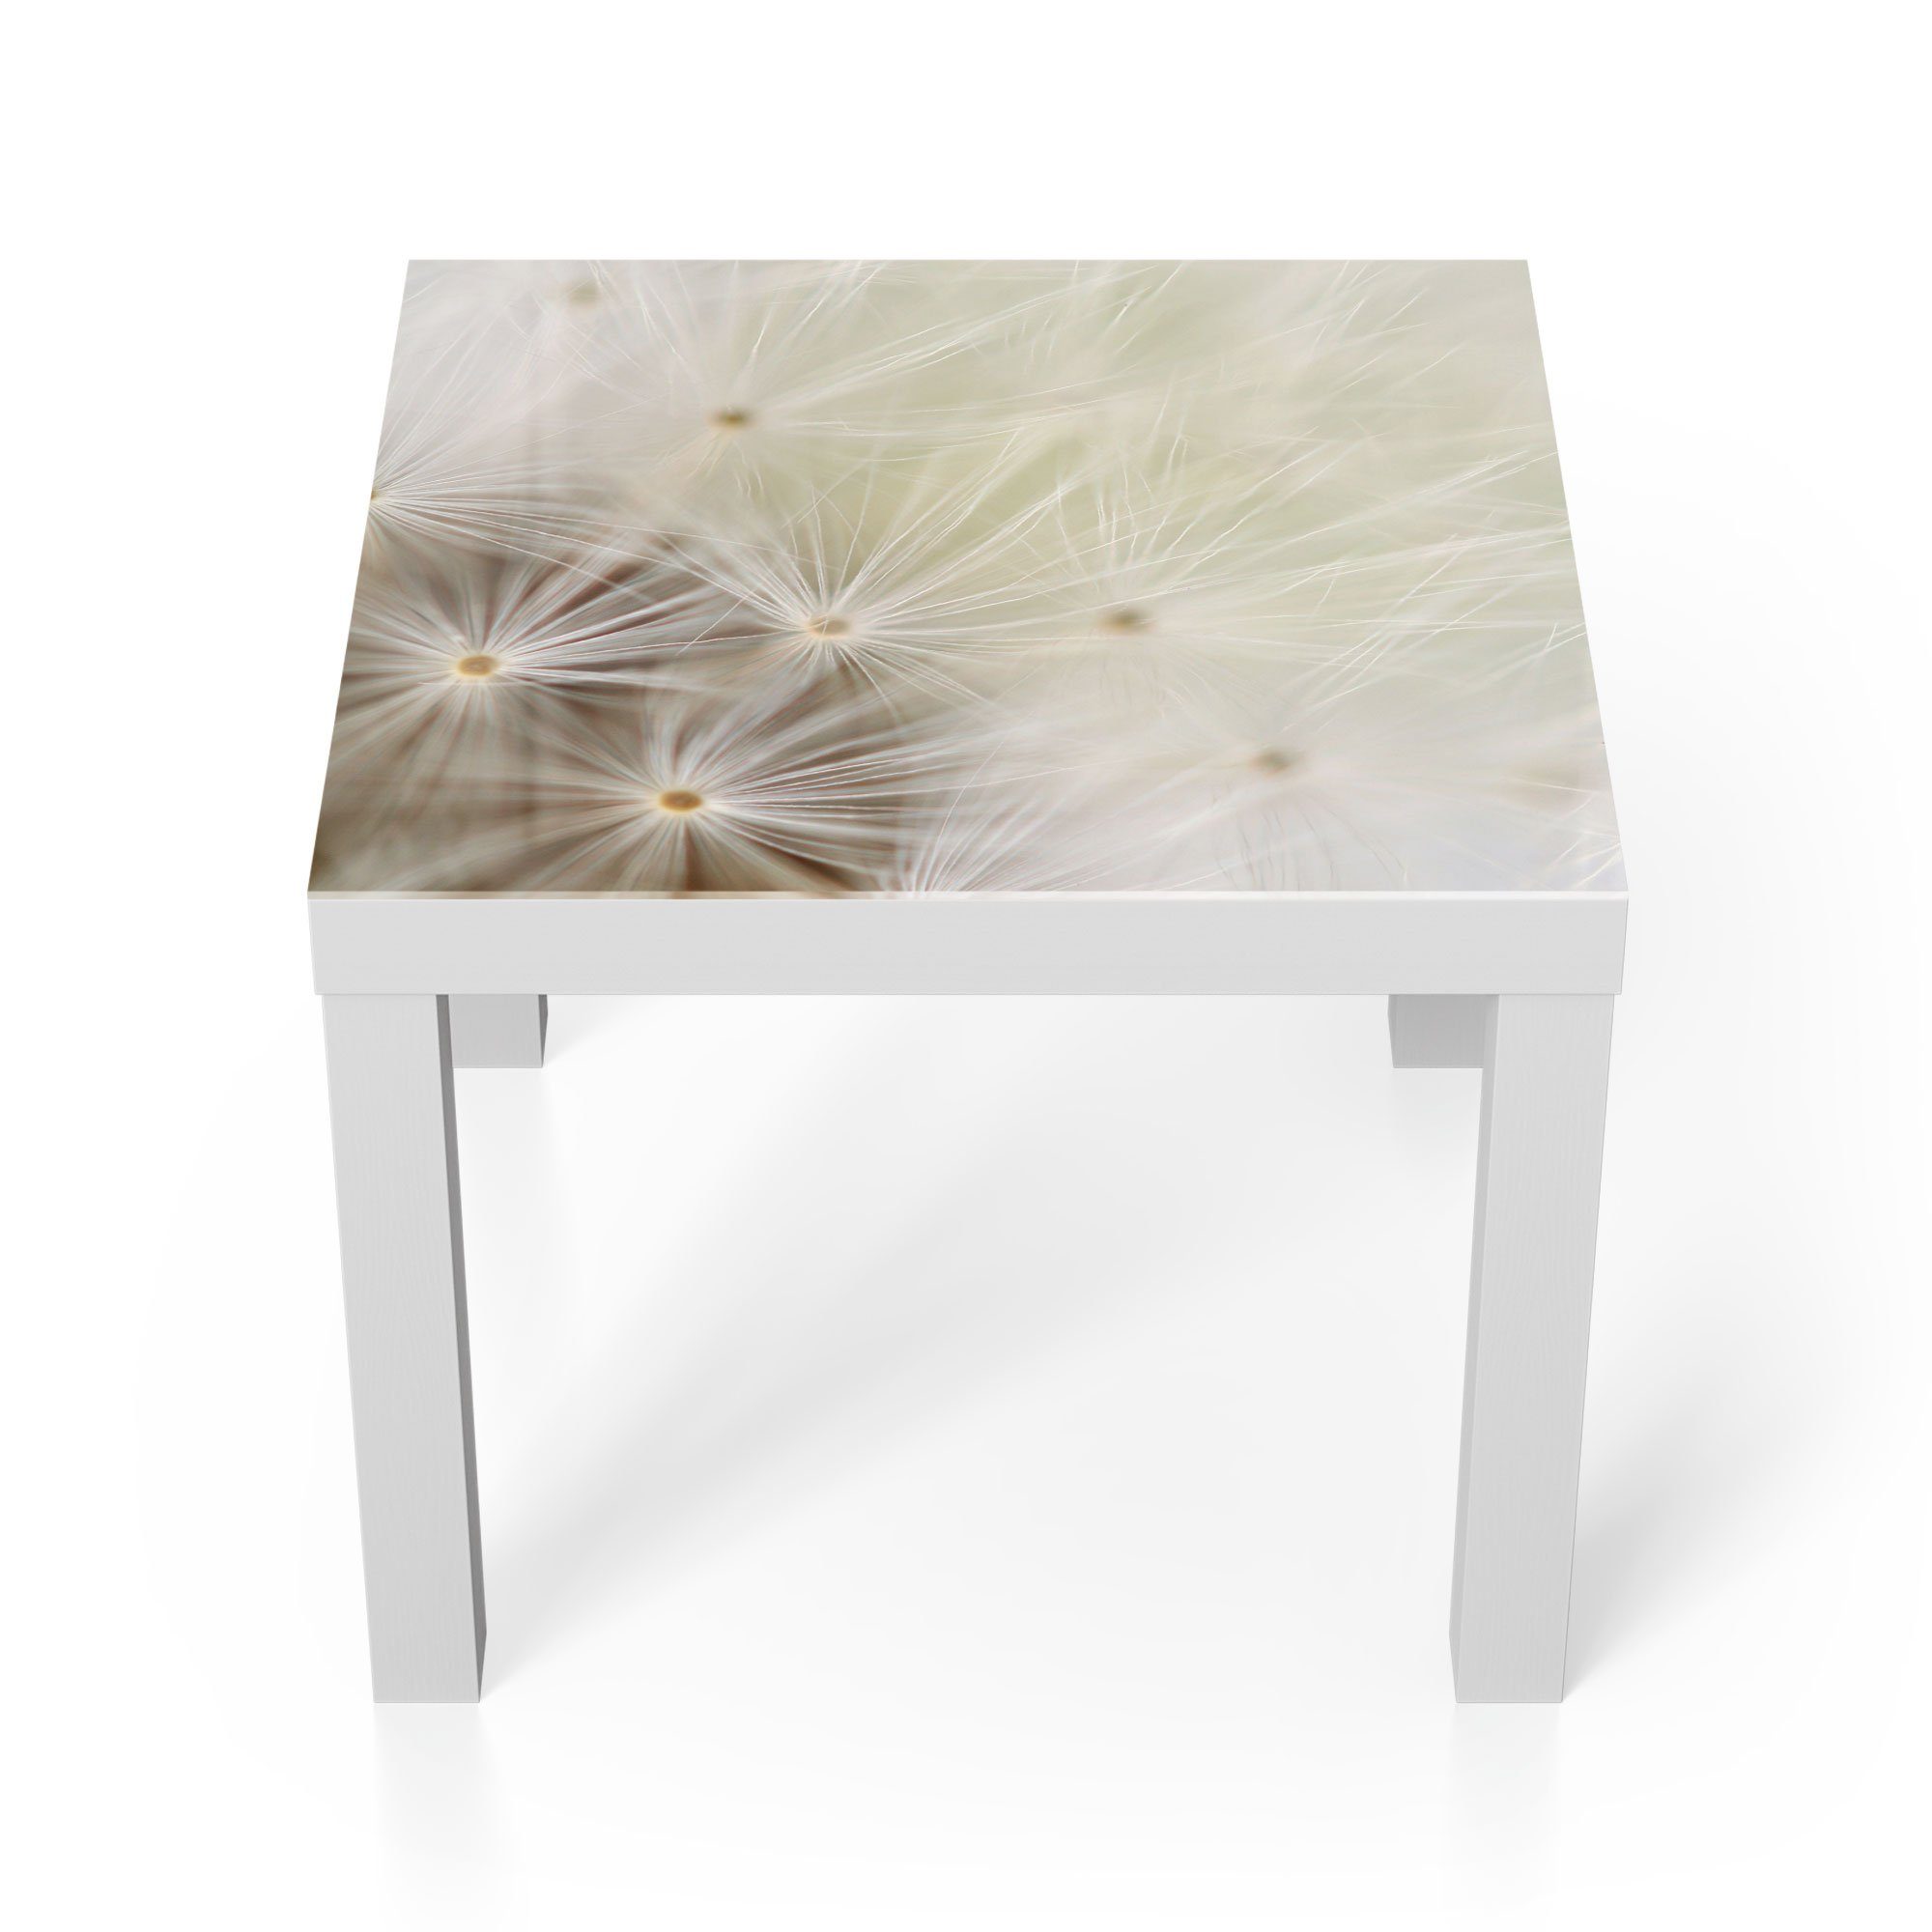 DEQORI Couchtisch 'Pusteblume ganz nah', Glas Beistelltisch Glastisch modern Weiß